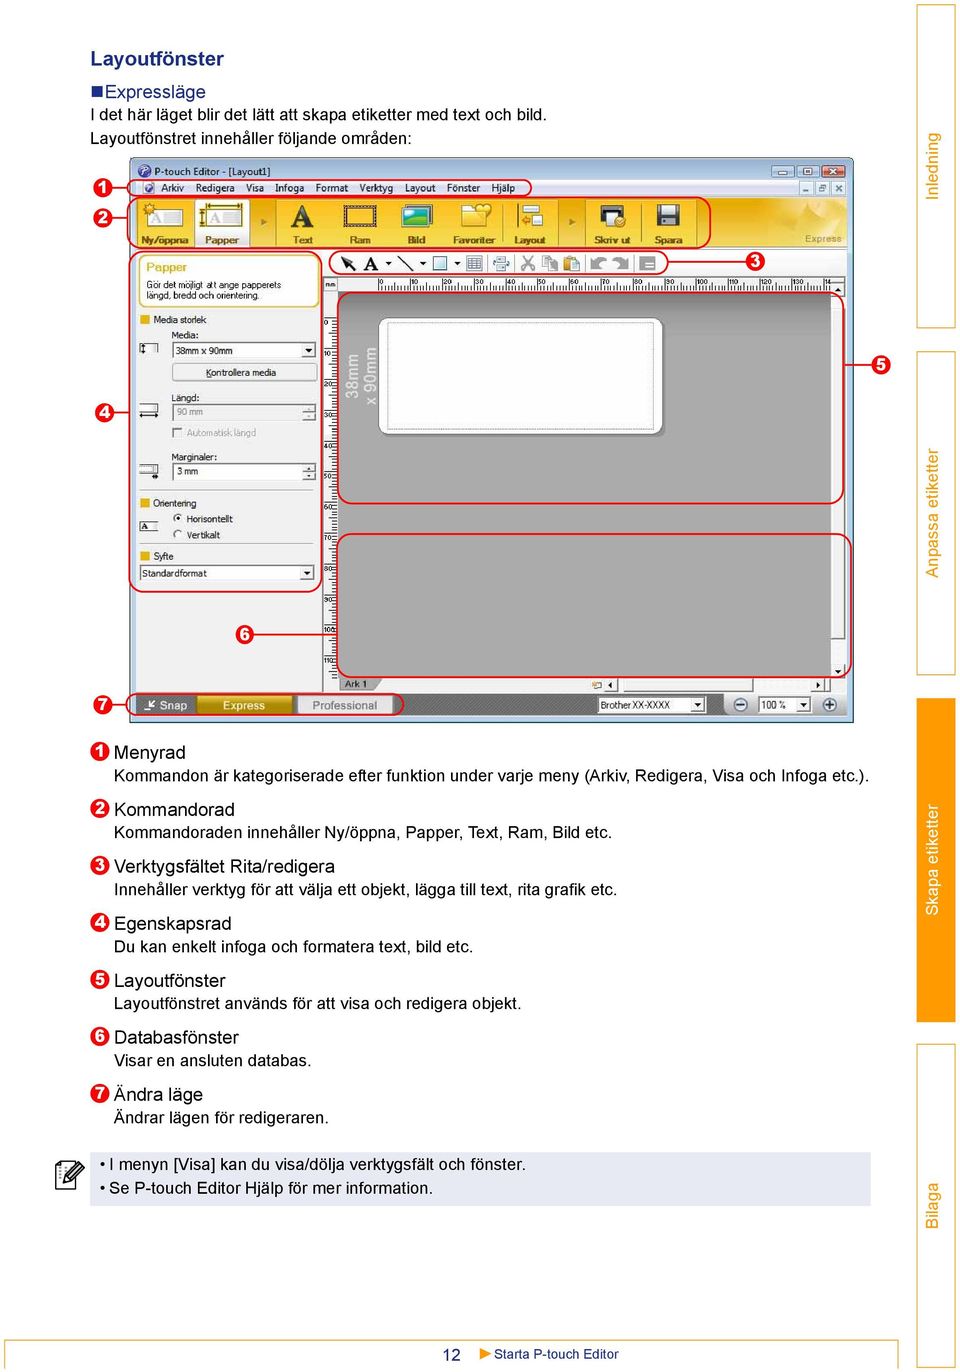 Kommandorad Kommandoraden innehåller Ny/öppna, Papper, Text, Ram, Bild etc. Verktygsfältet Rita/redigera Innehåller verktyg för att välja ett objekt, lägga till text, rita grafik etc.